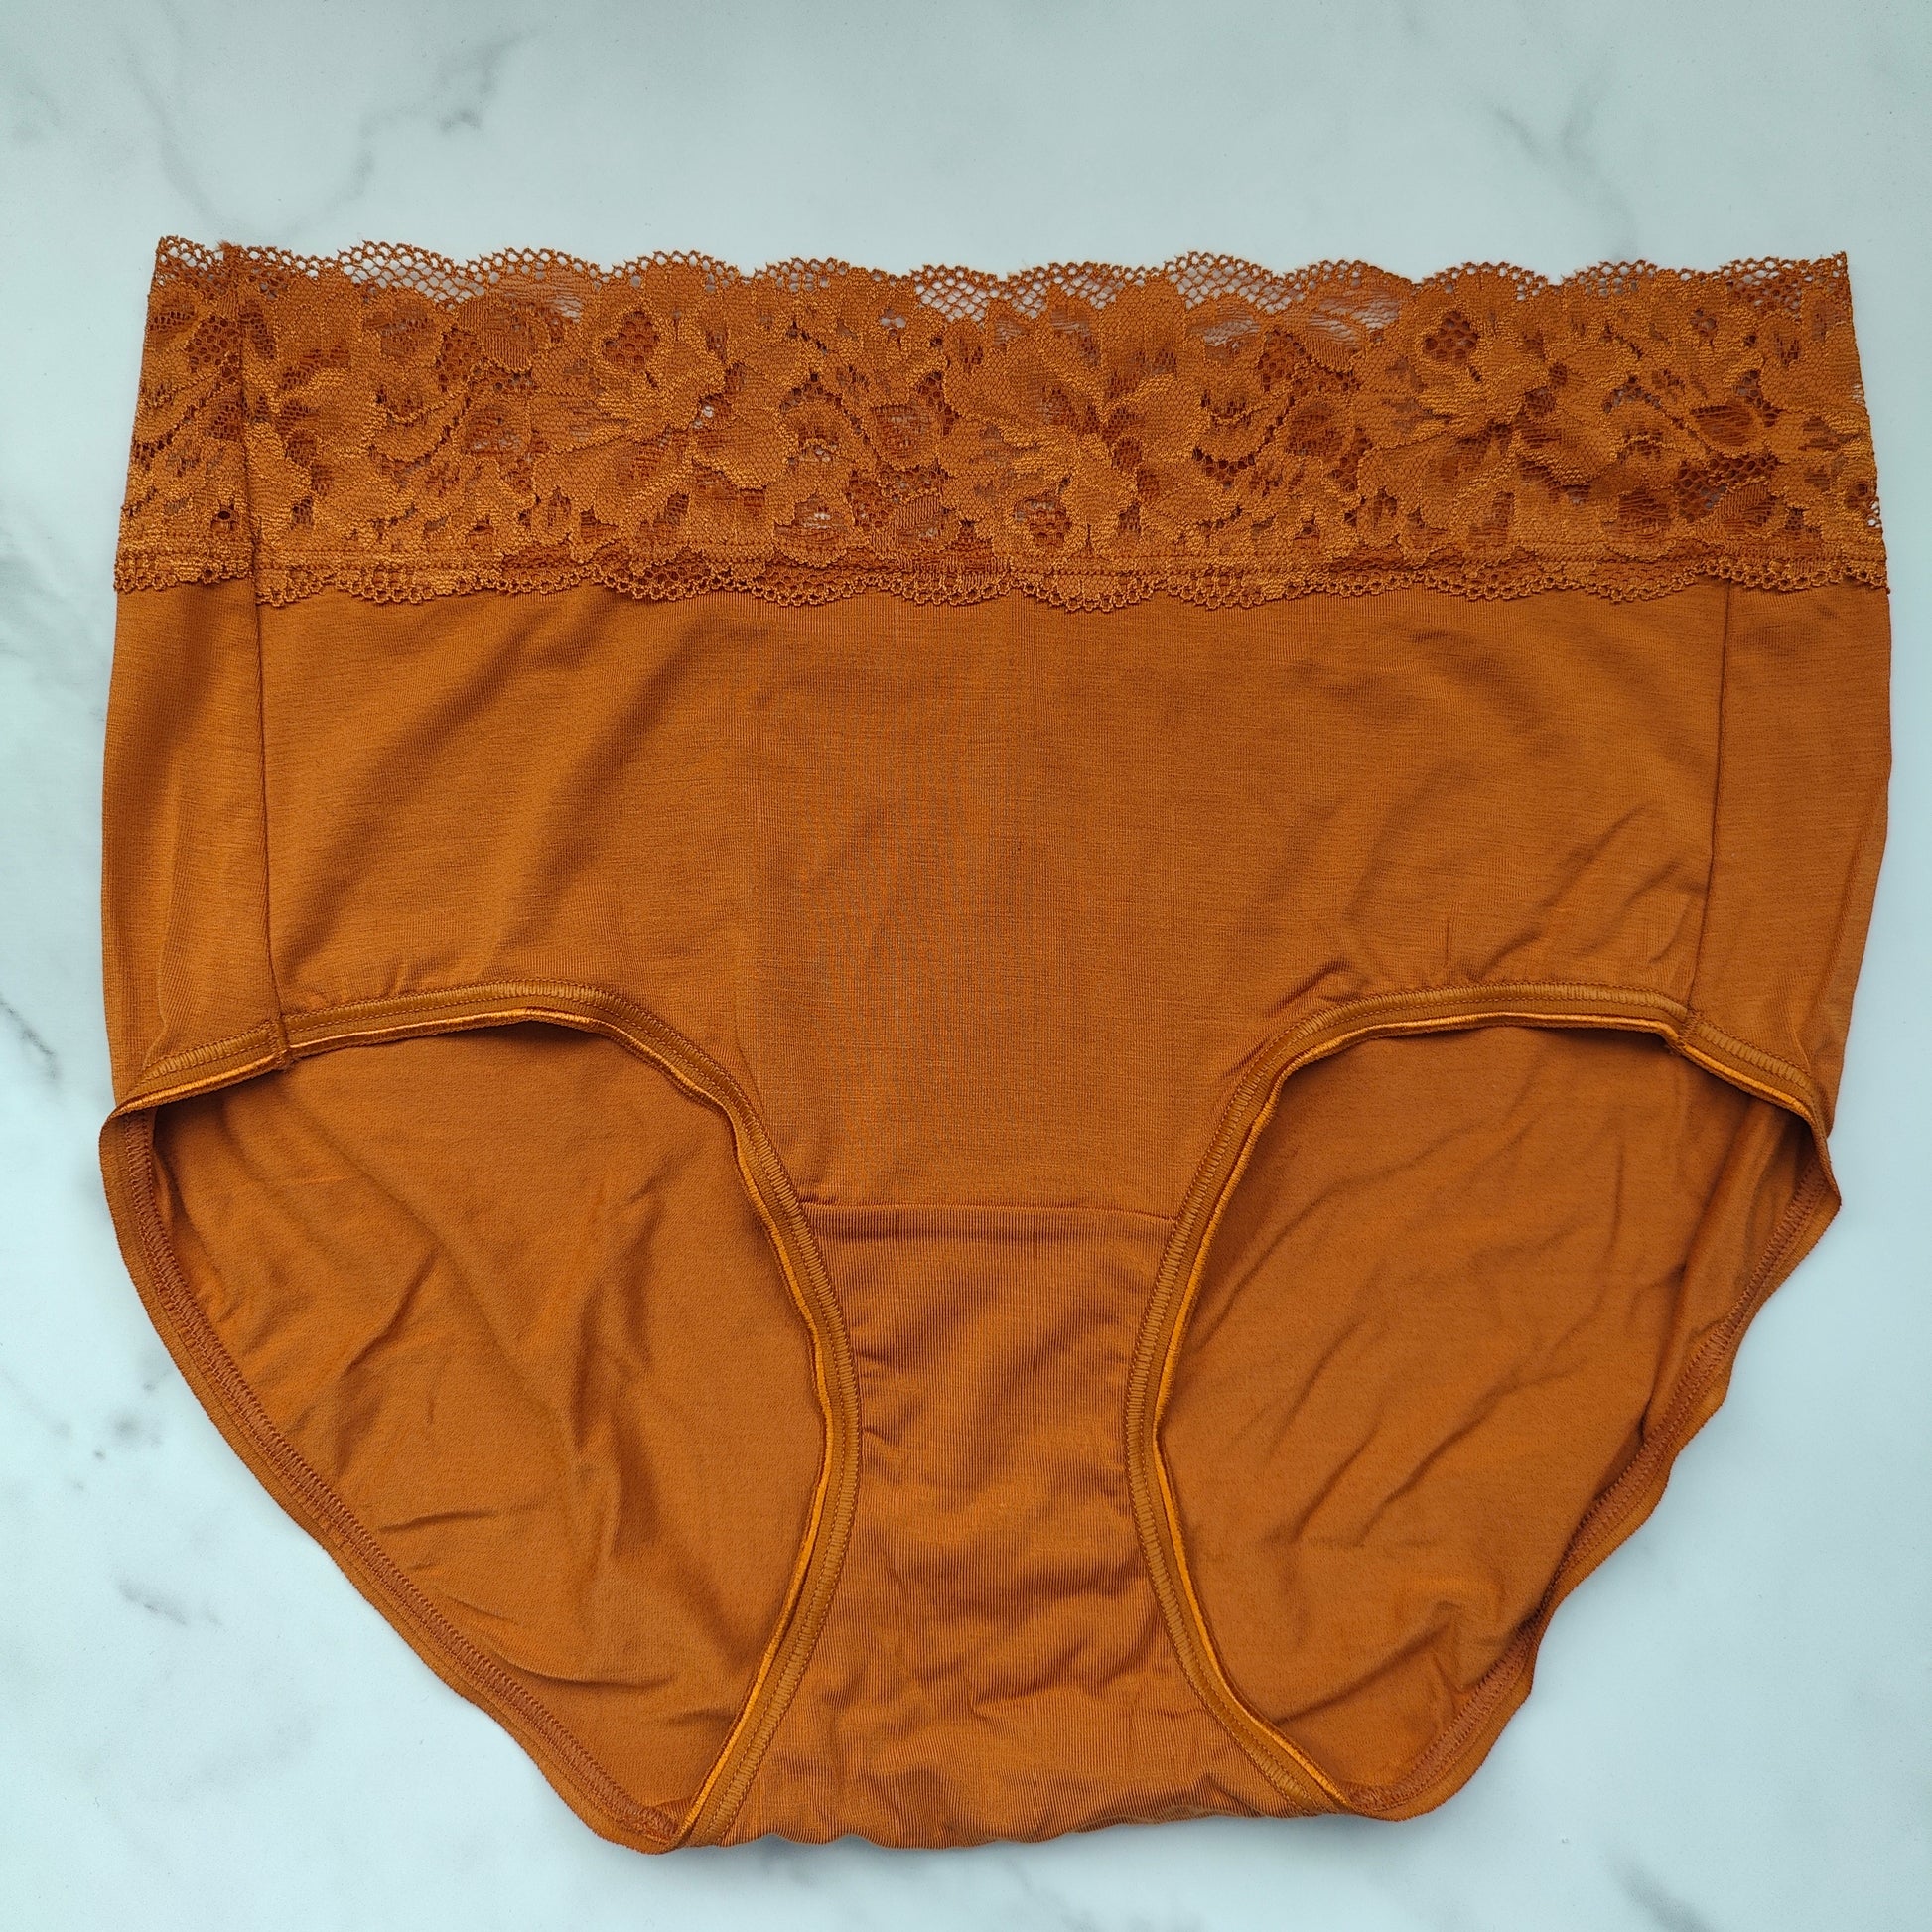 Embraceable Super Soft Signature Lace Brief Panty – Goob's Closet